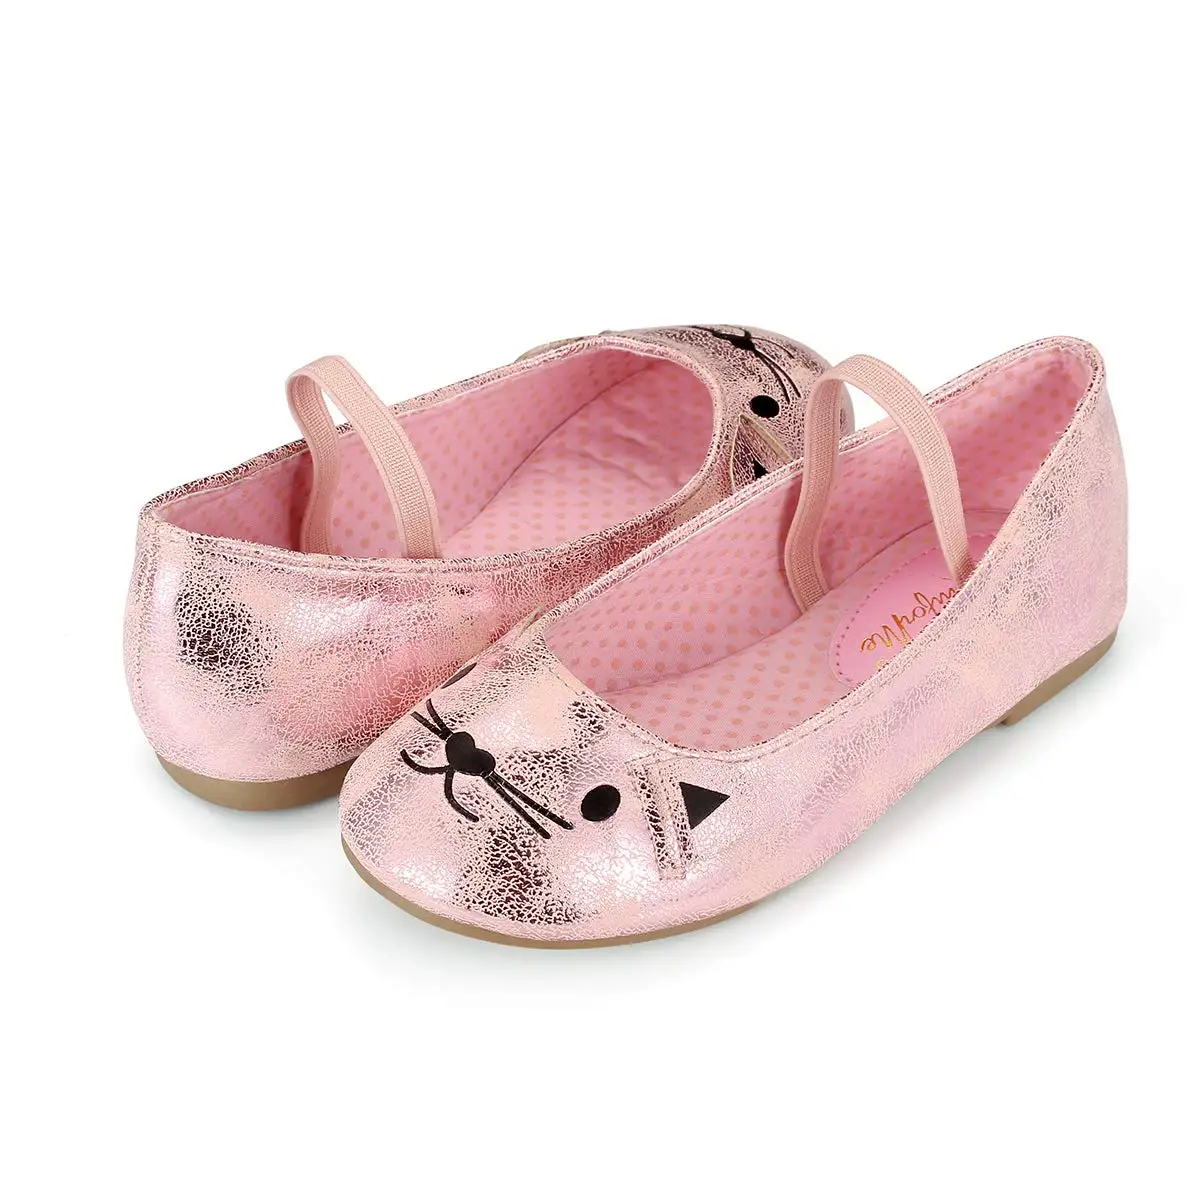 KushyShoo малыша сандалии для девочек Нескользящие мягкие детские босоножки, детская обувь летнее милое розовое платье принцессы с принтом «Кот» Обувь для танцев Сандалии - Цвет: Розовый